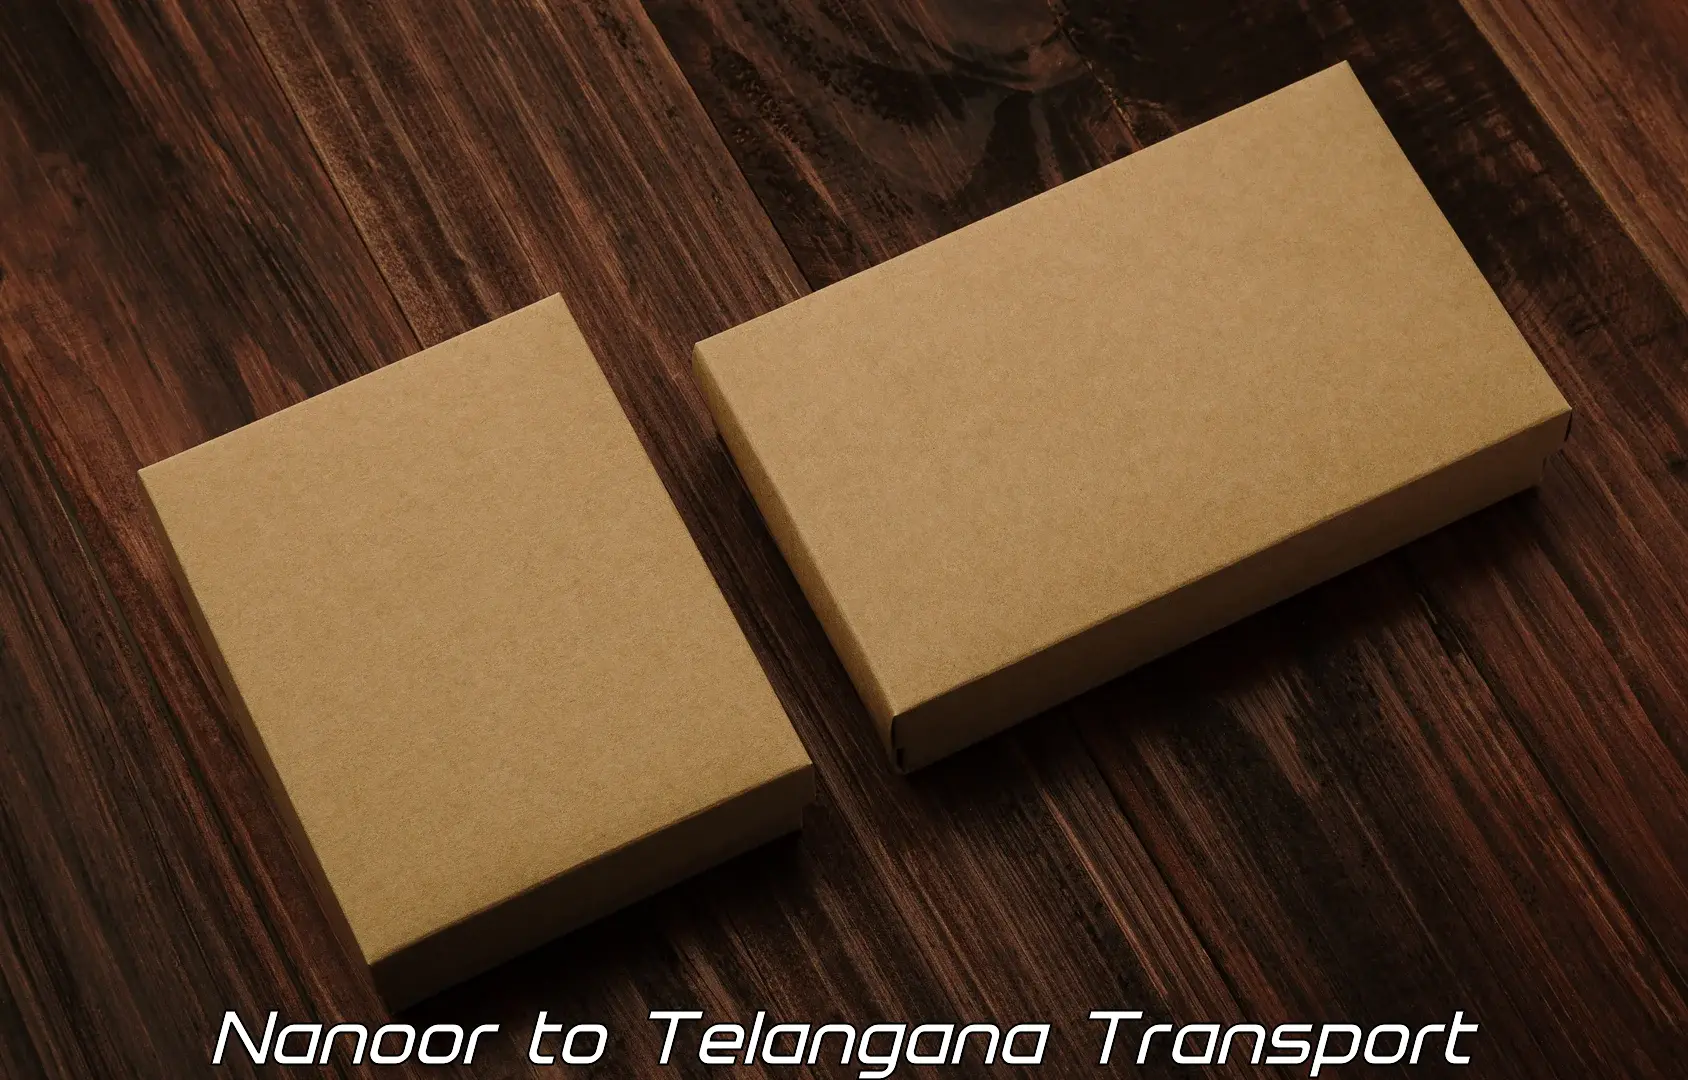 Online transport service Nanoor to Bodhan